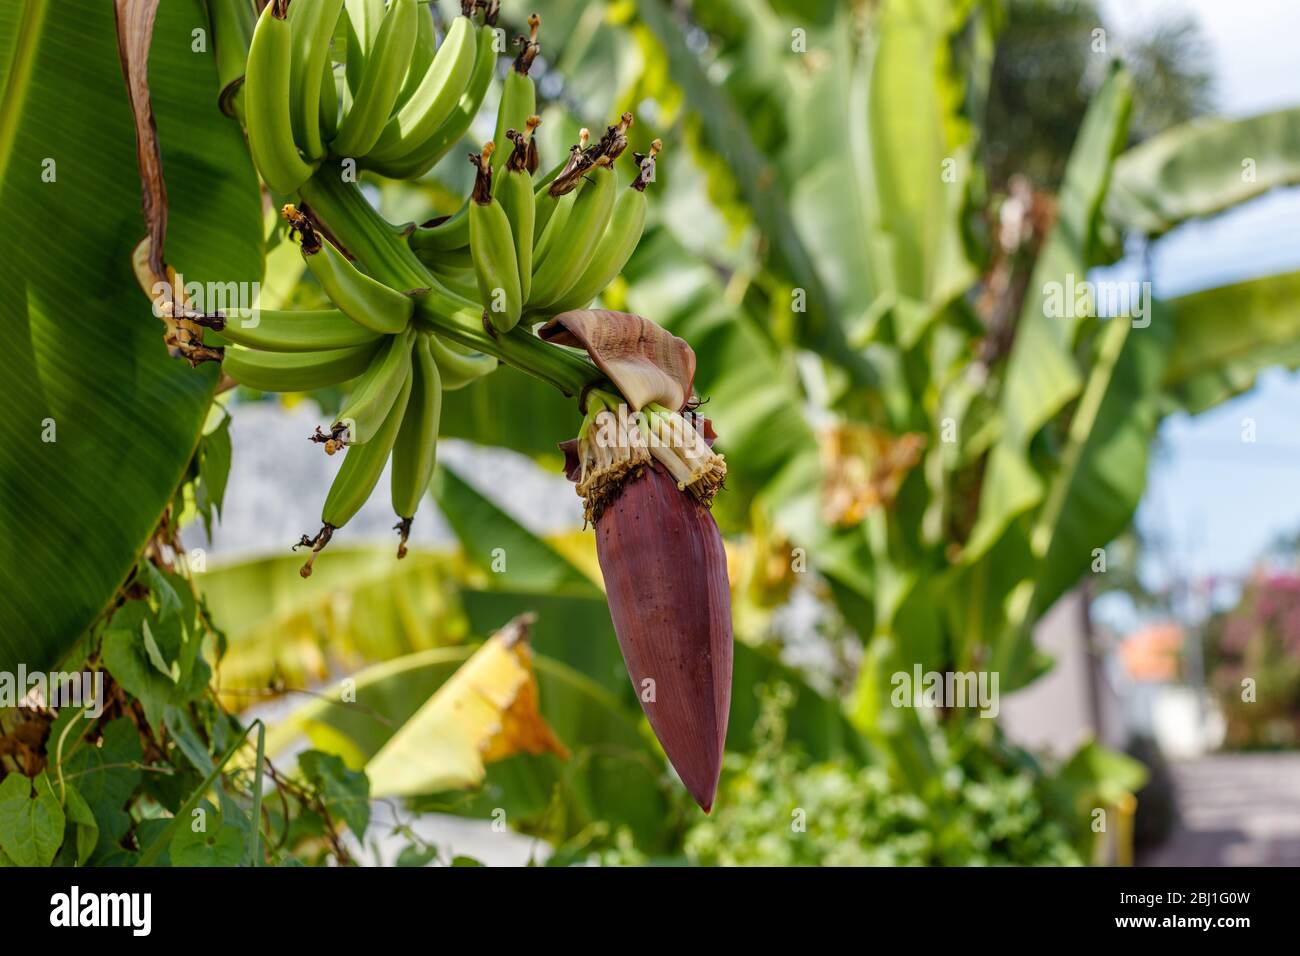 Mazzo di banana verde matura sull'albero e l'infiorescenza di banana (fiore). Bali, Indonesia. Foto Stock